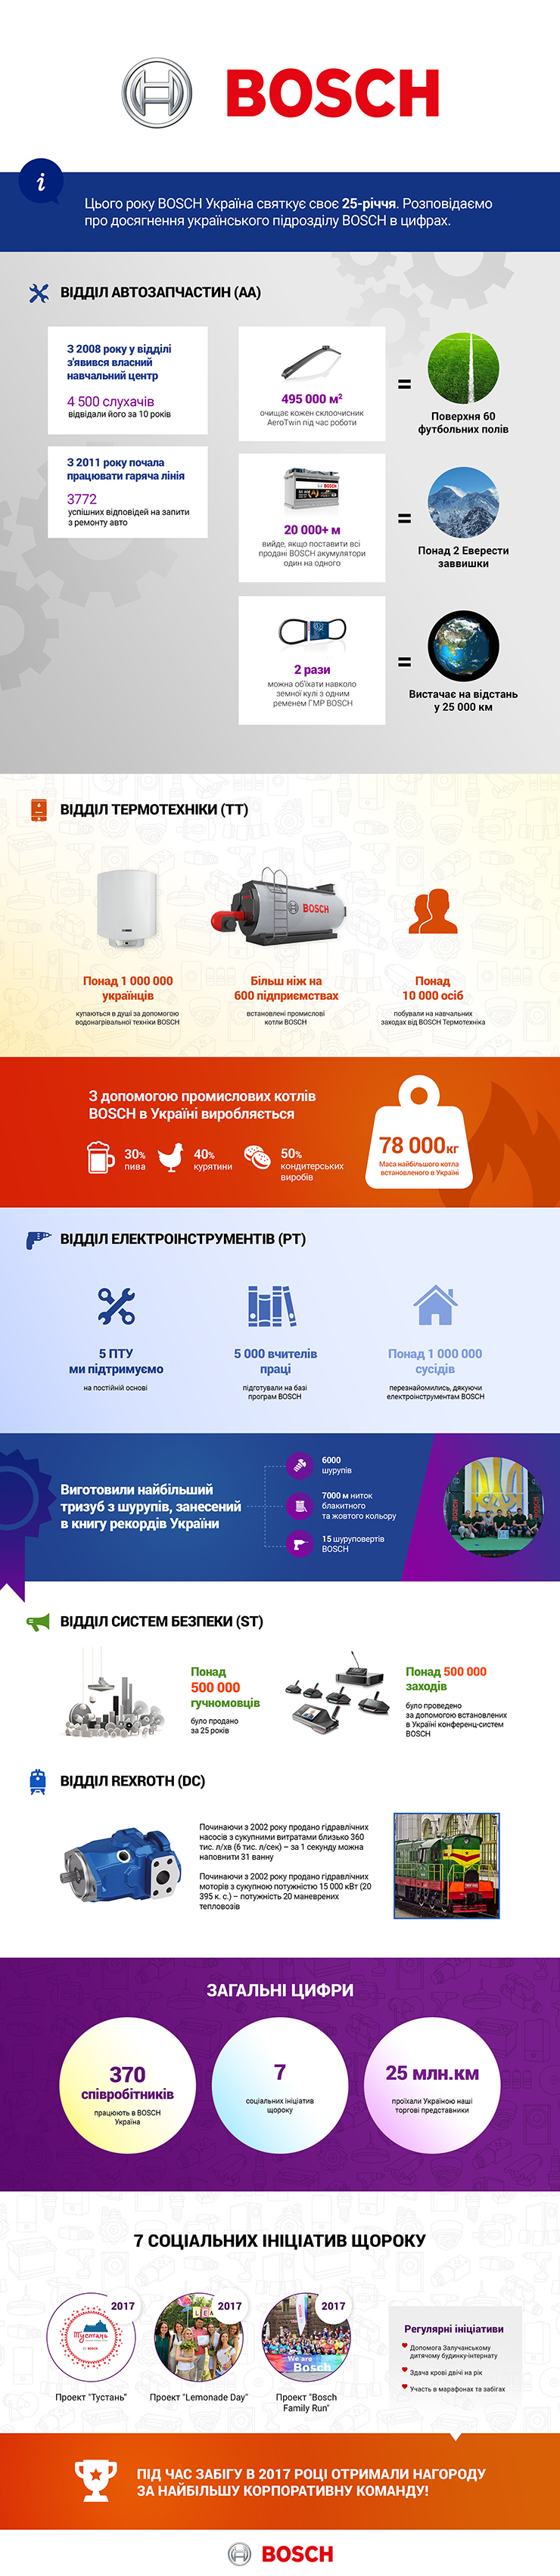 У 2018 році Bosch Україна планує реалізувати проект «Запорозька Січ», спрямований на підтримку історичного Запорізького заповідника з проведенням відновлювальних та ремонтних робіт